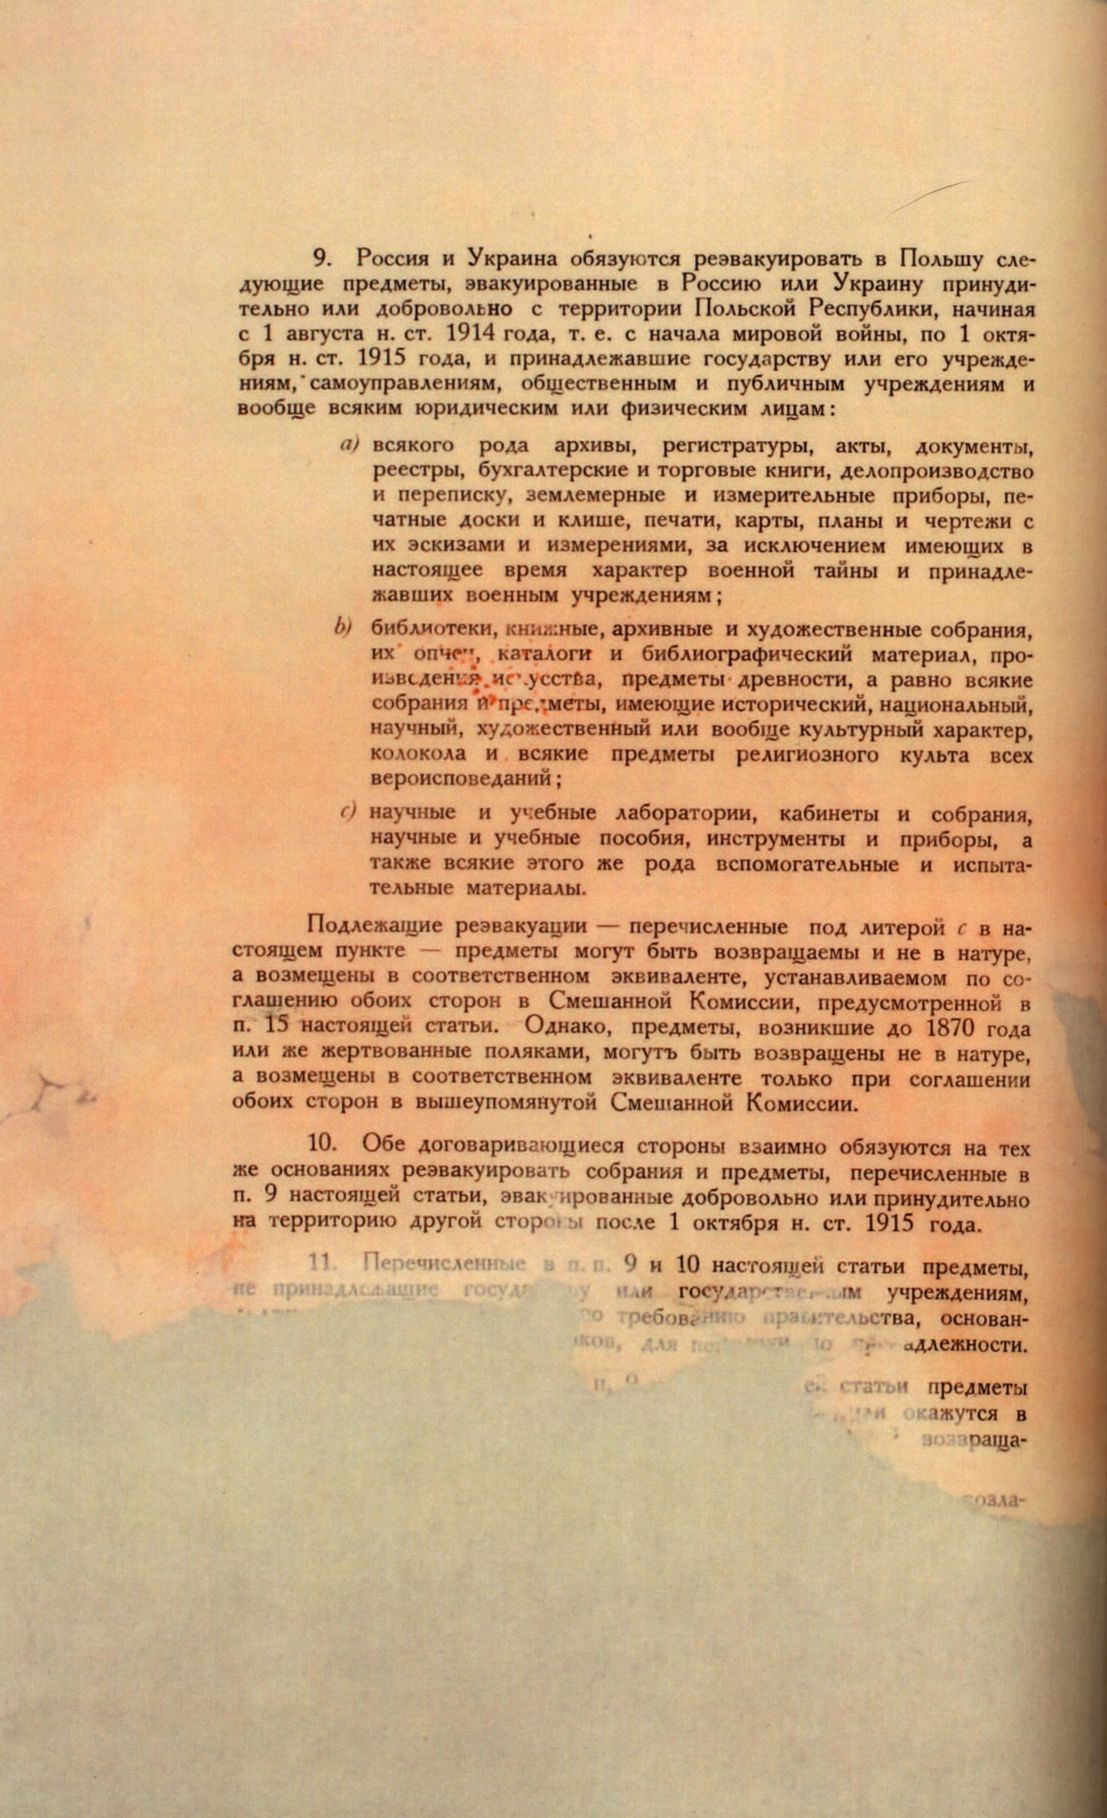 Traktat Pokoju między Polską a Rosją i Ukrainą podpisany w Rydze dnia 18 marca 1921 roku, s. 78, MSZ, sygn. 6739.